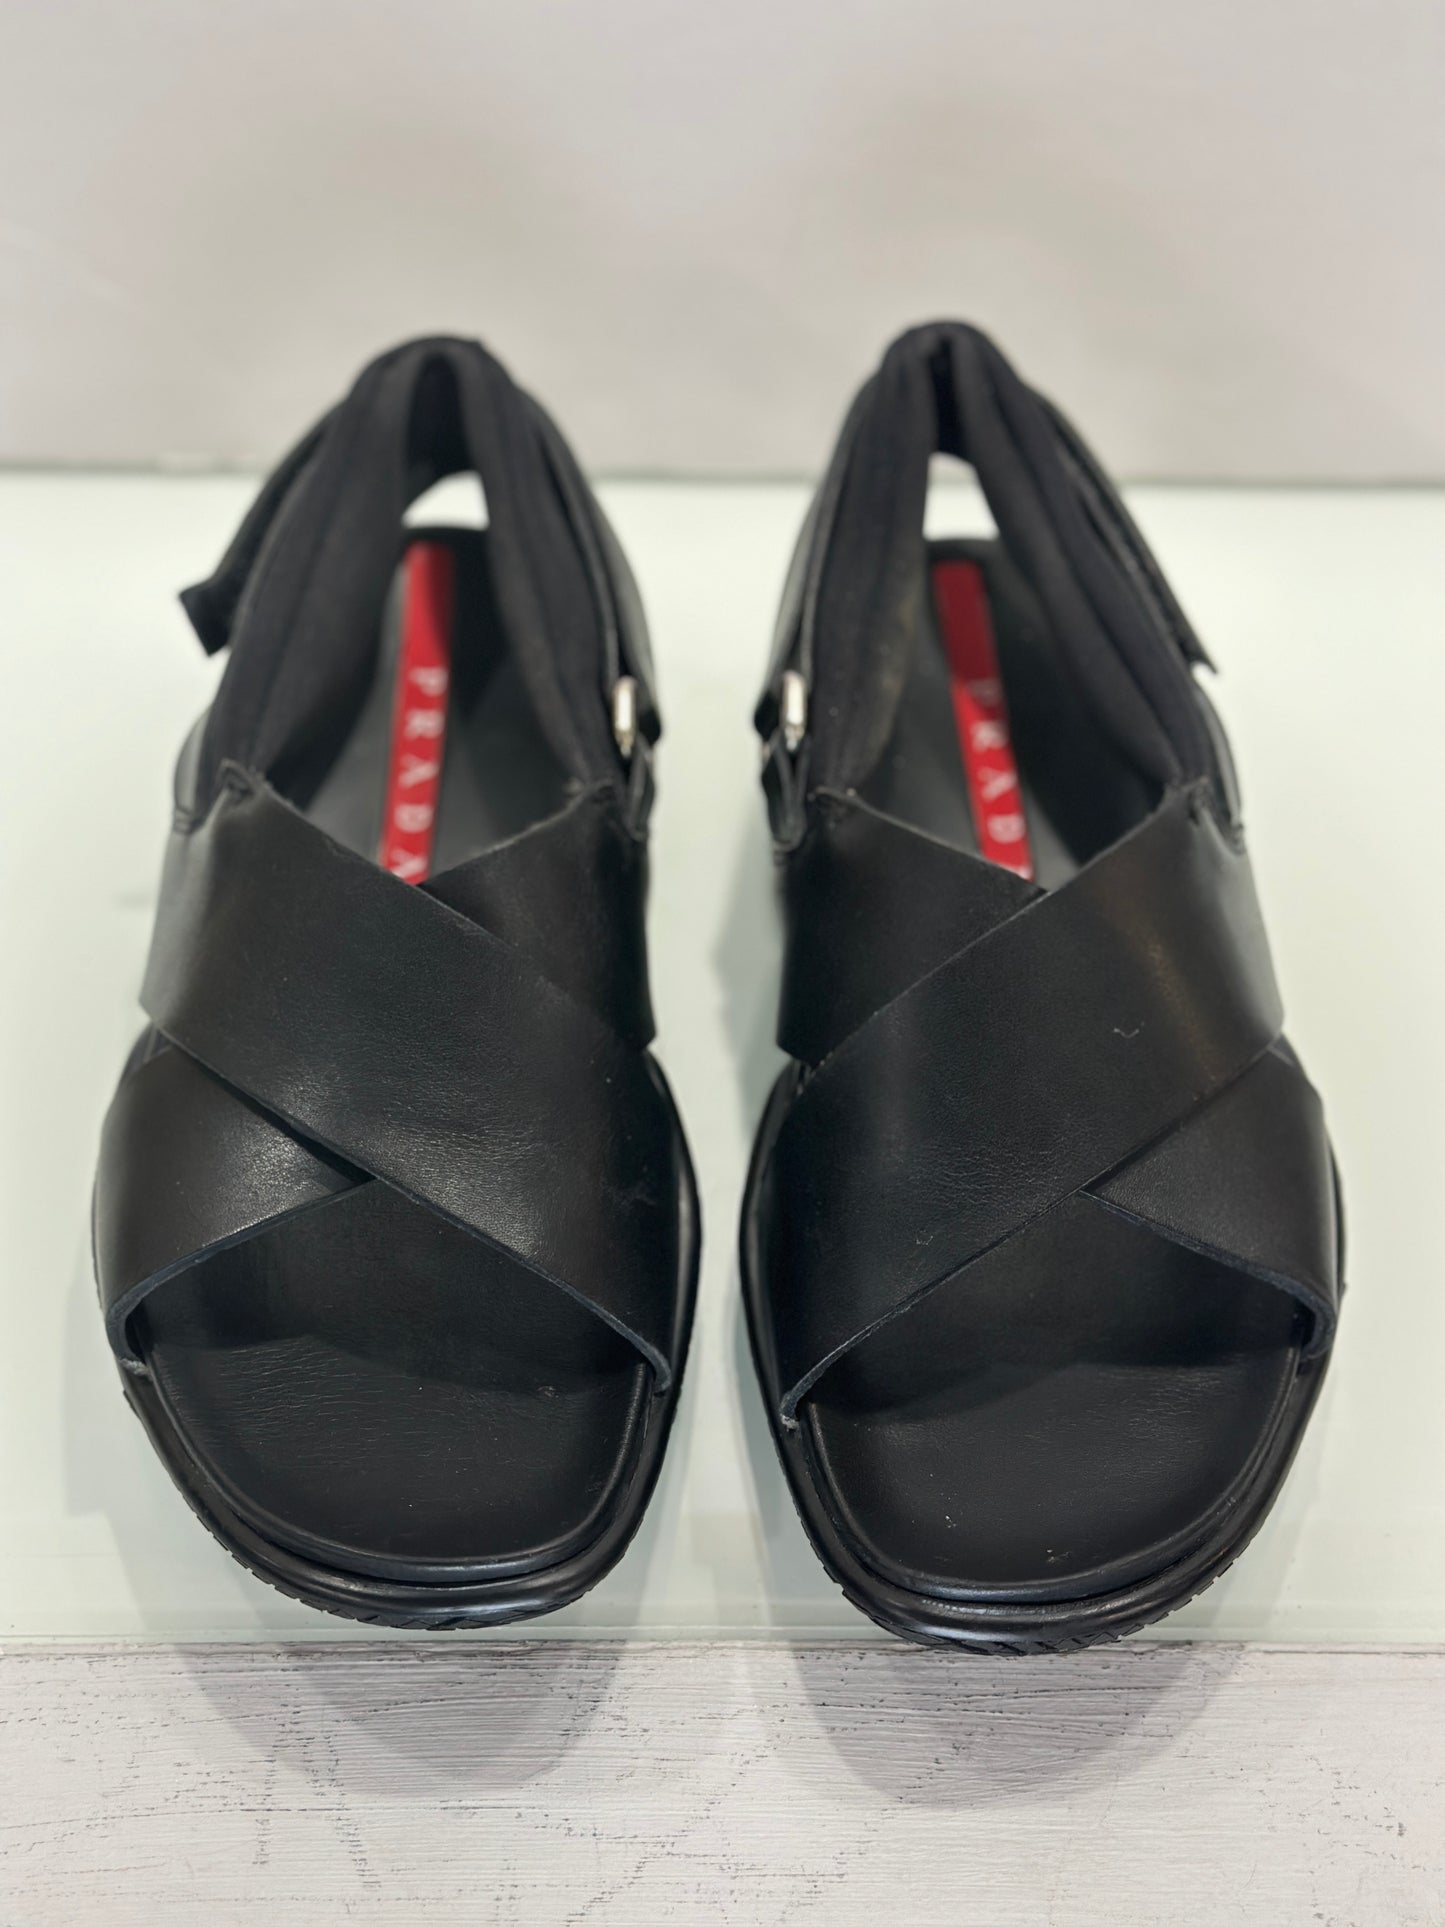 PRADA leather sandals/ 36.5